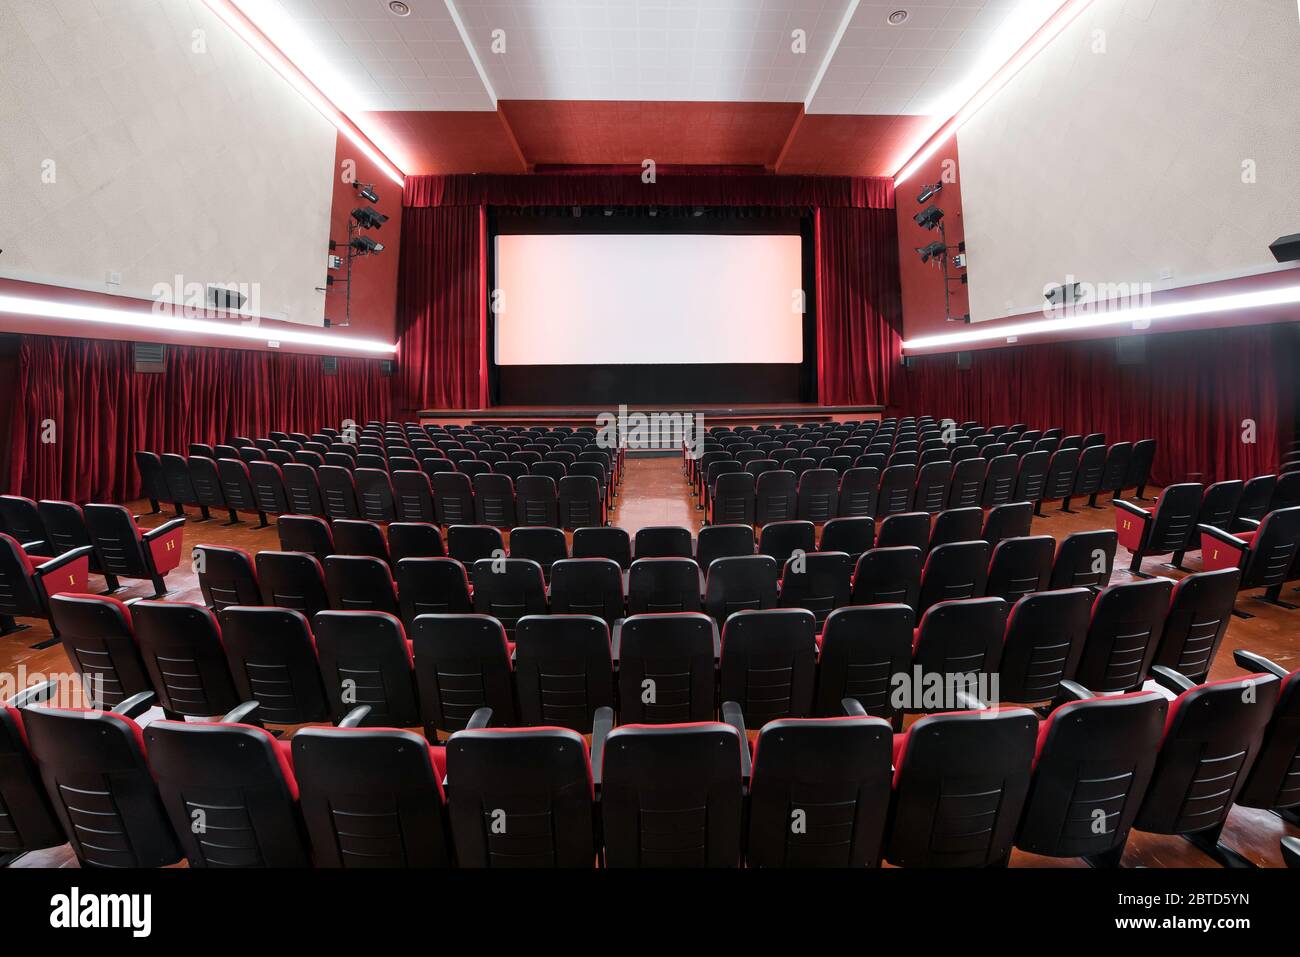 Vue panoramique de l'intérieur d'un cinéma montrant l'architecture et les rangées de sièges rouges vides surplombant une scène déserte Banque D'Images